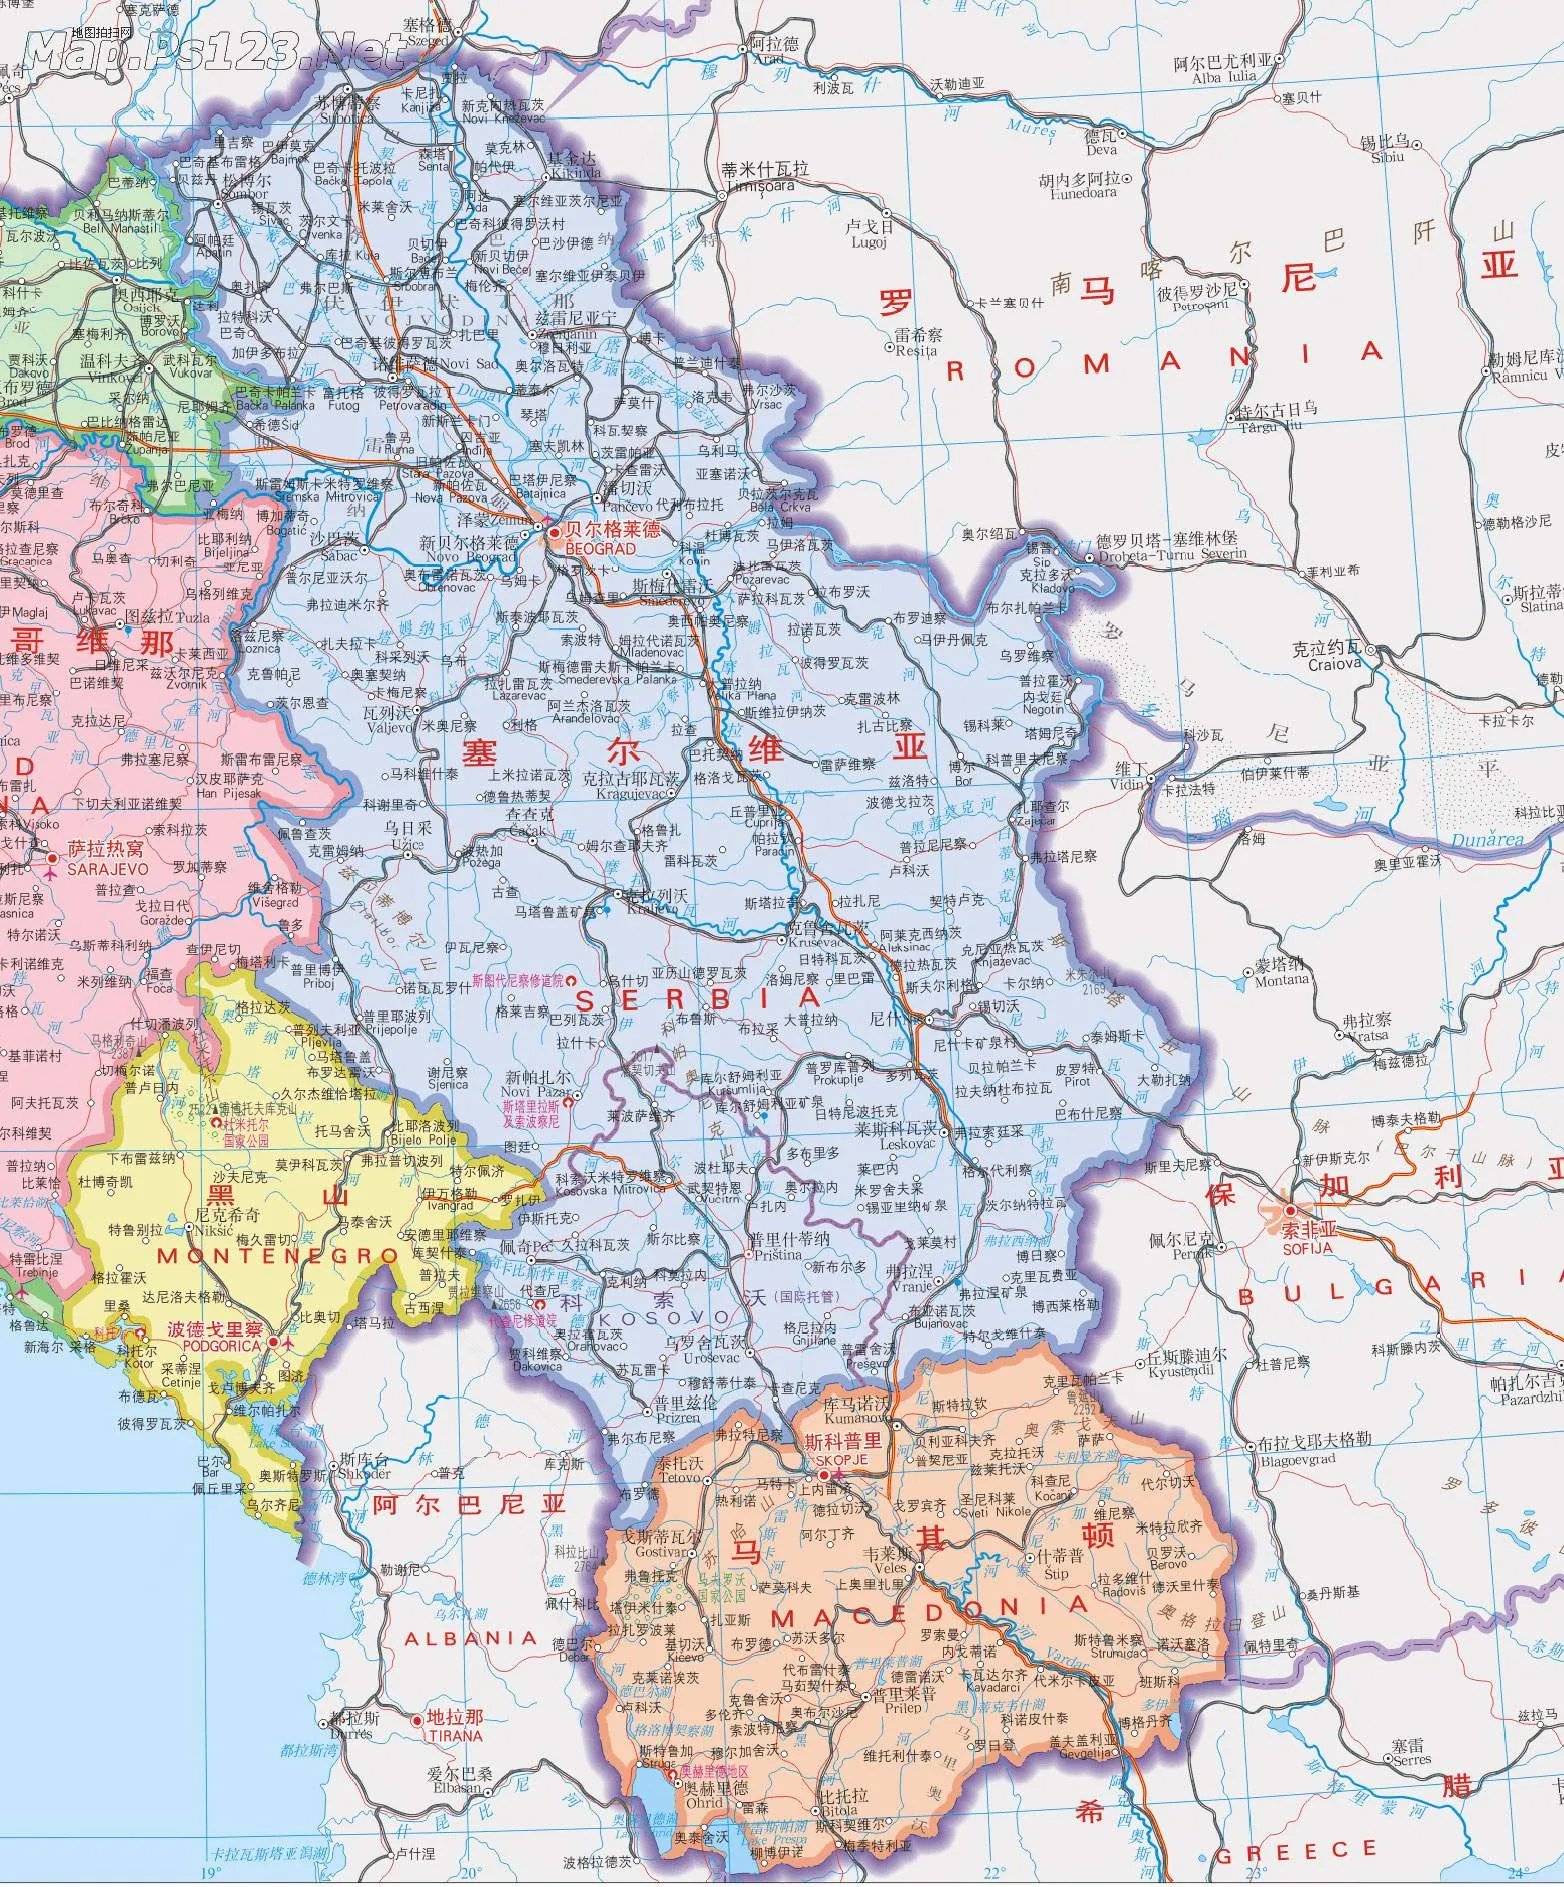 塞尔维亚在哪里 | 欧洲塞尔维亚共和国基本情况简介